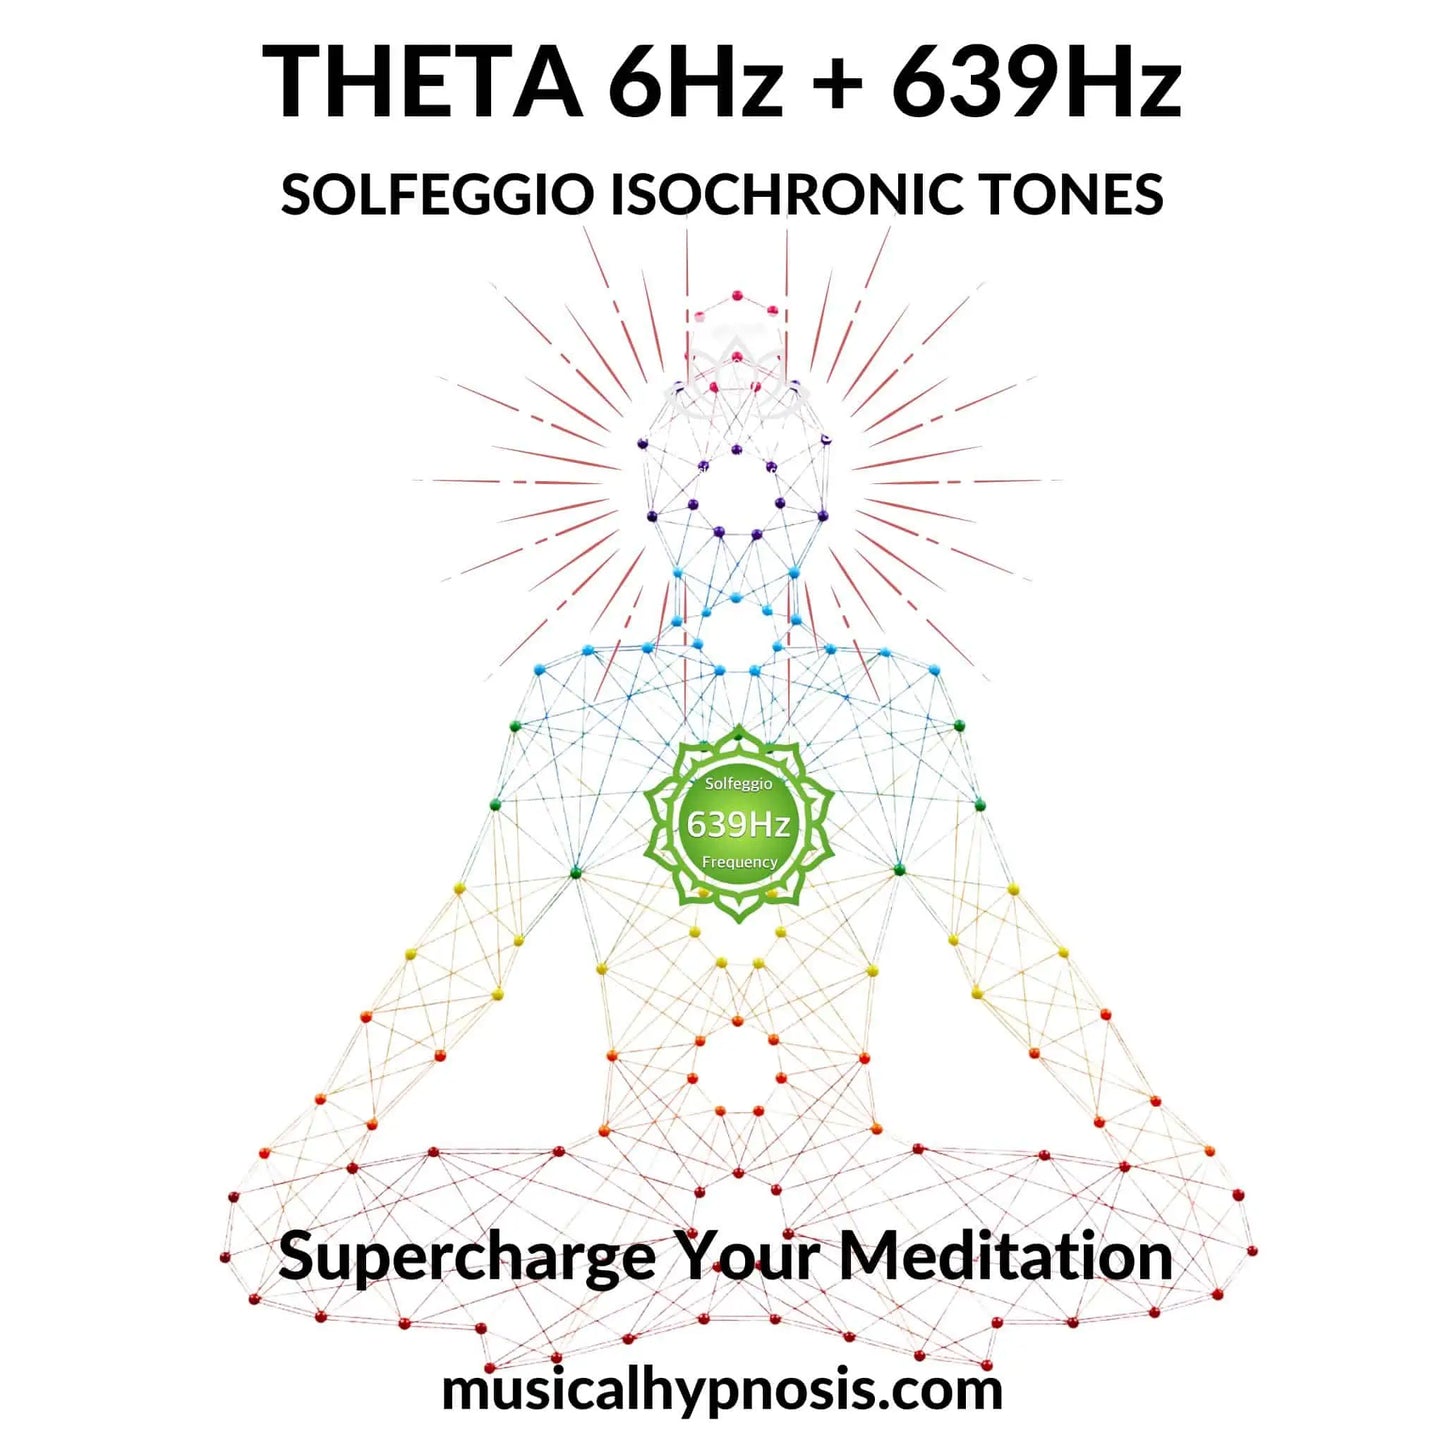 Theta 6Hz and 639Hz Solfeggio Isochronic Tones | 30 minutes